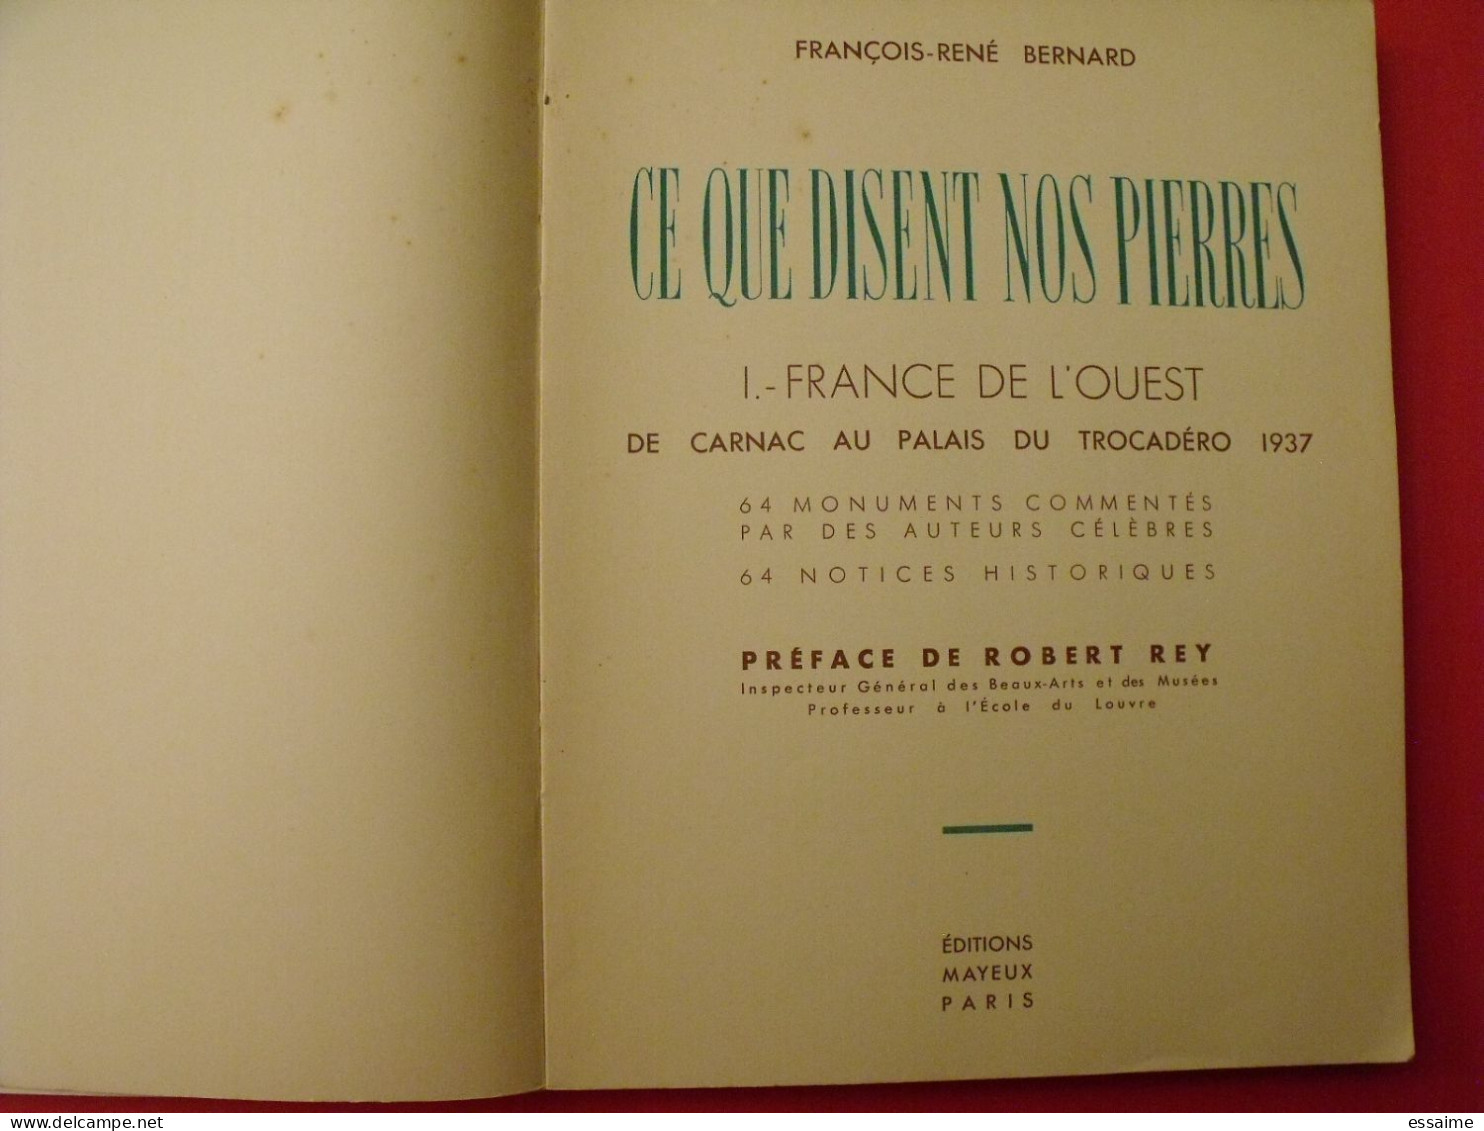 Ce Que Disent Nos Pierres. François-René Bernard. 1- France De L'ouest. Mayeux 1937 - Bretagne